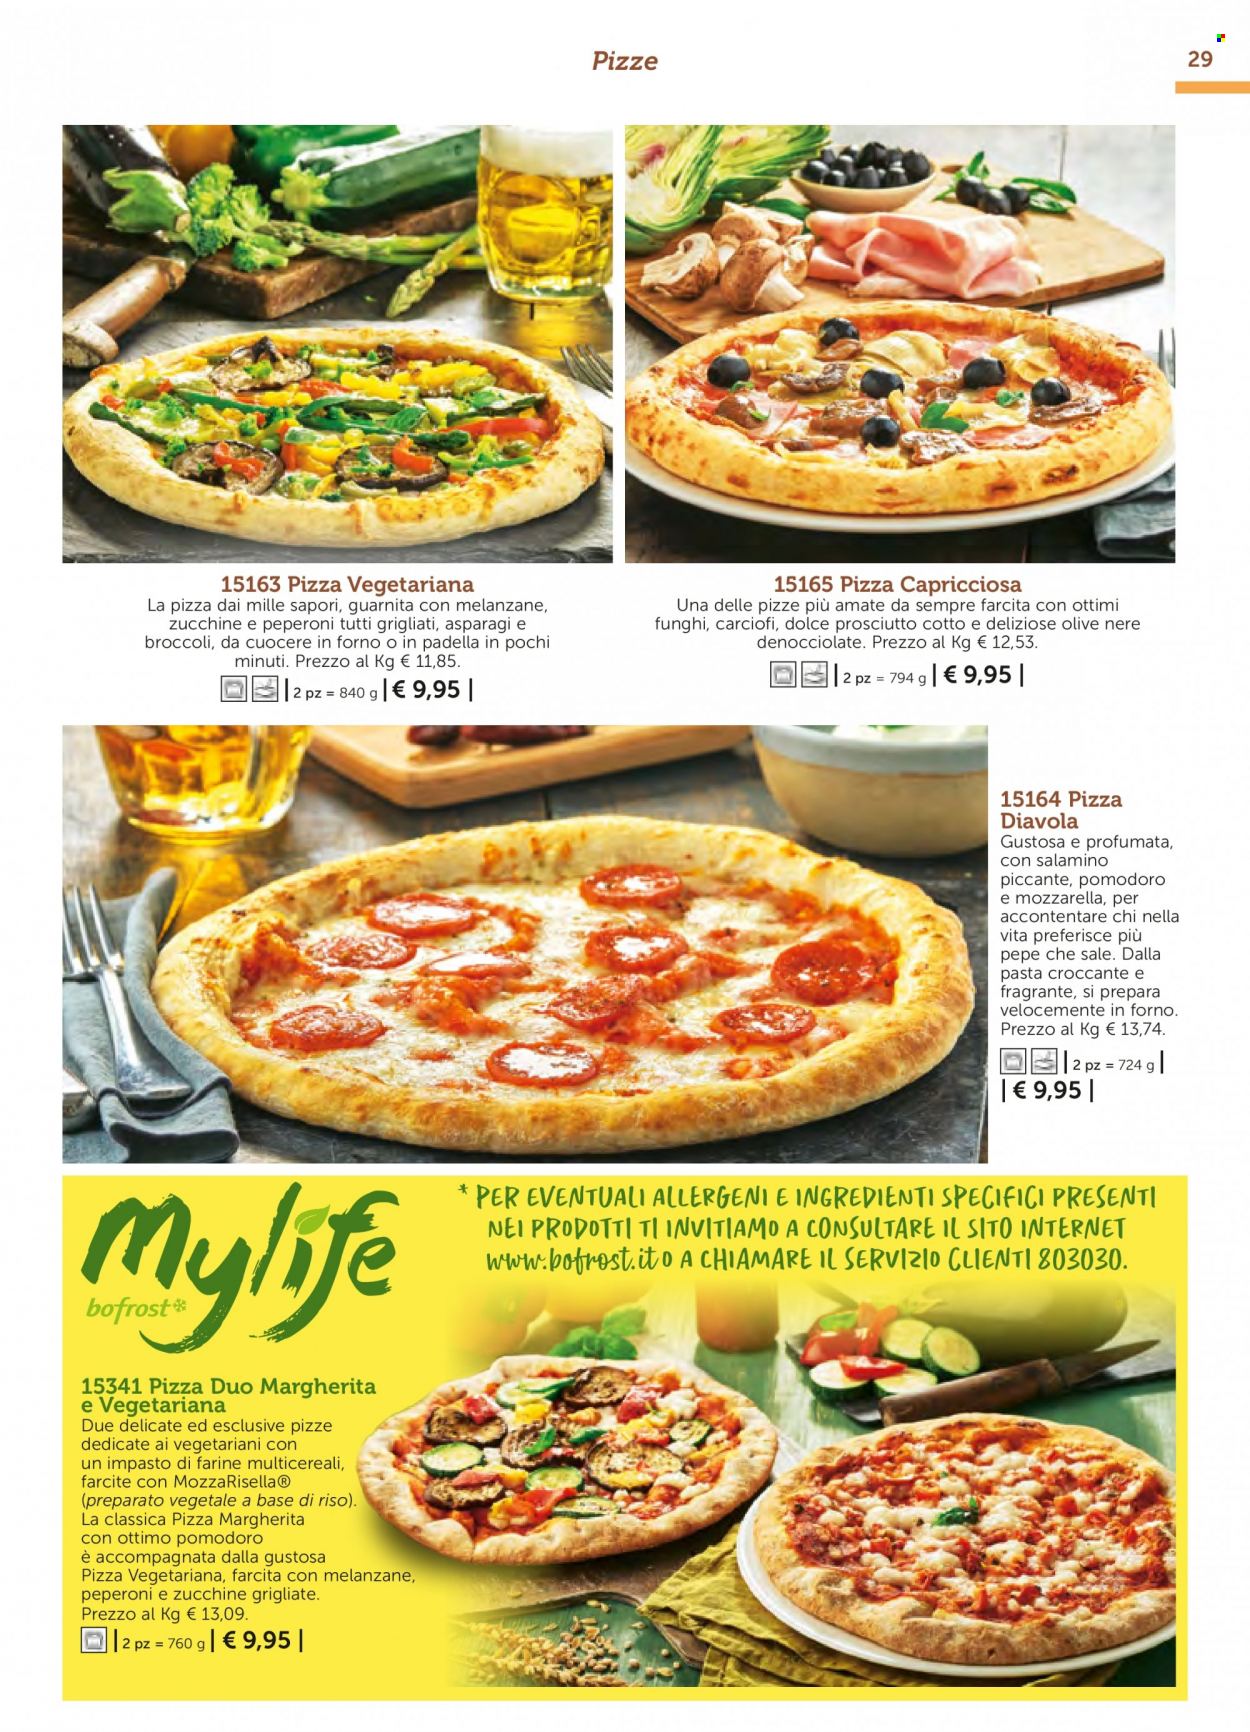 thumbnail - Volantino Bofrost - Prodotti in offerta - zucchine grigliate, pizza, pizza Margherita. Pagina 29.